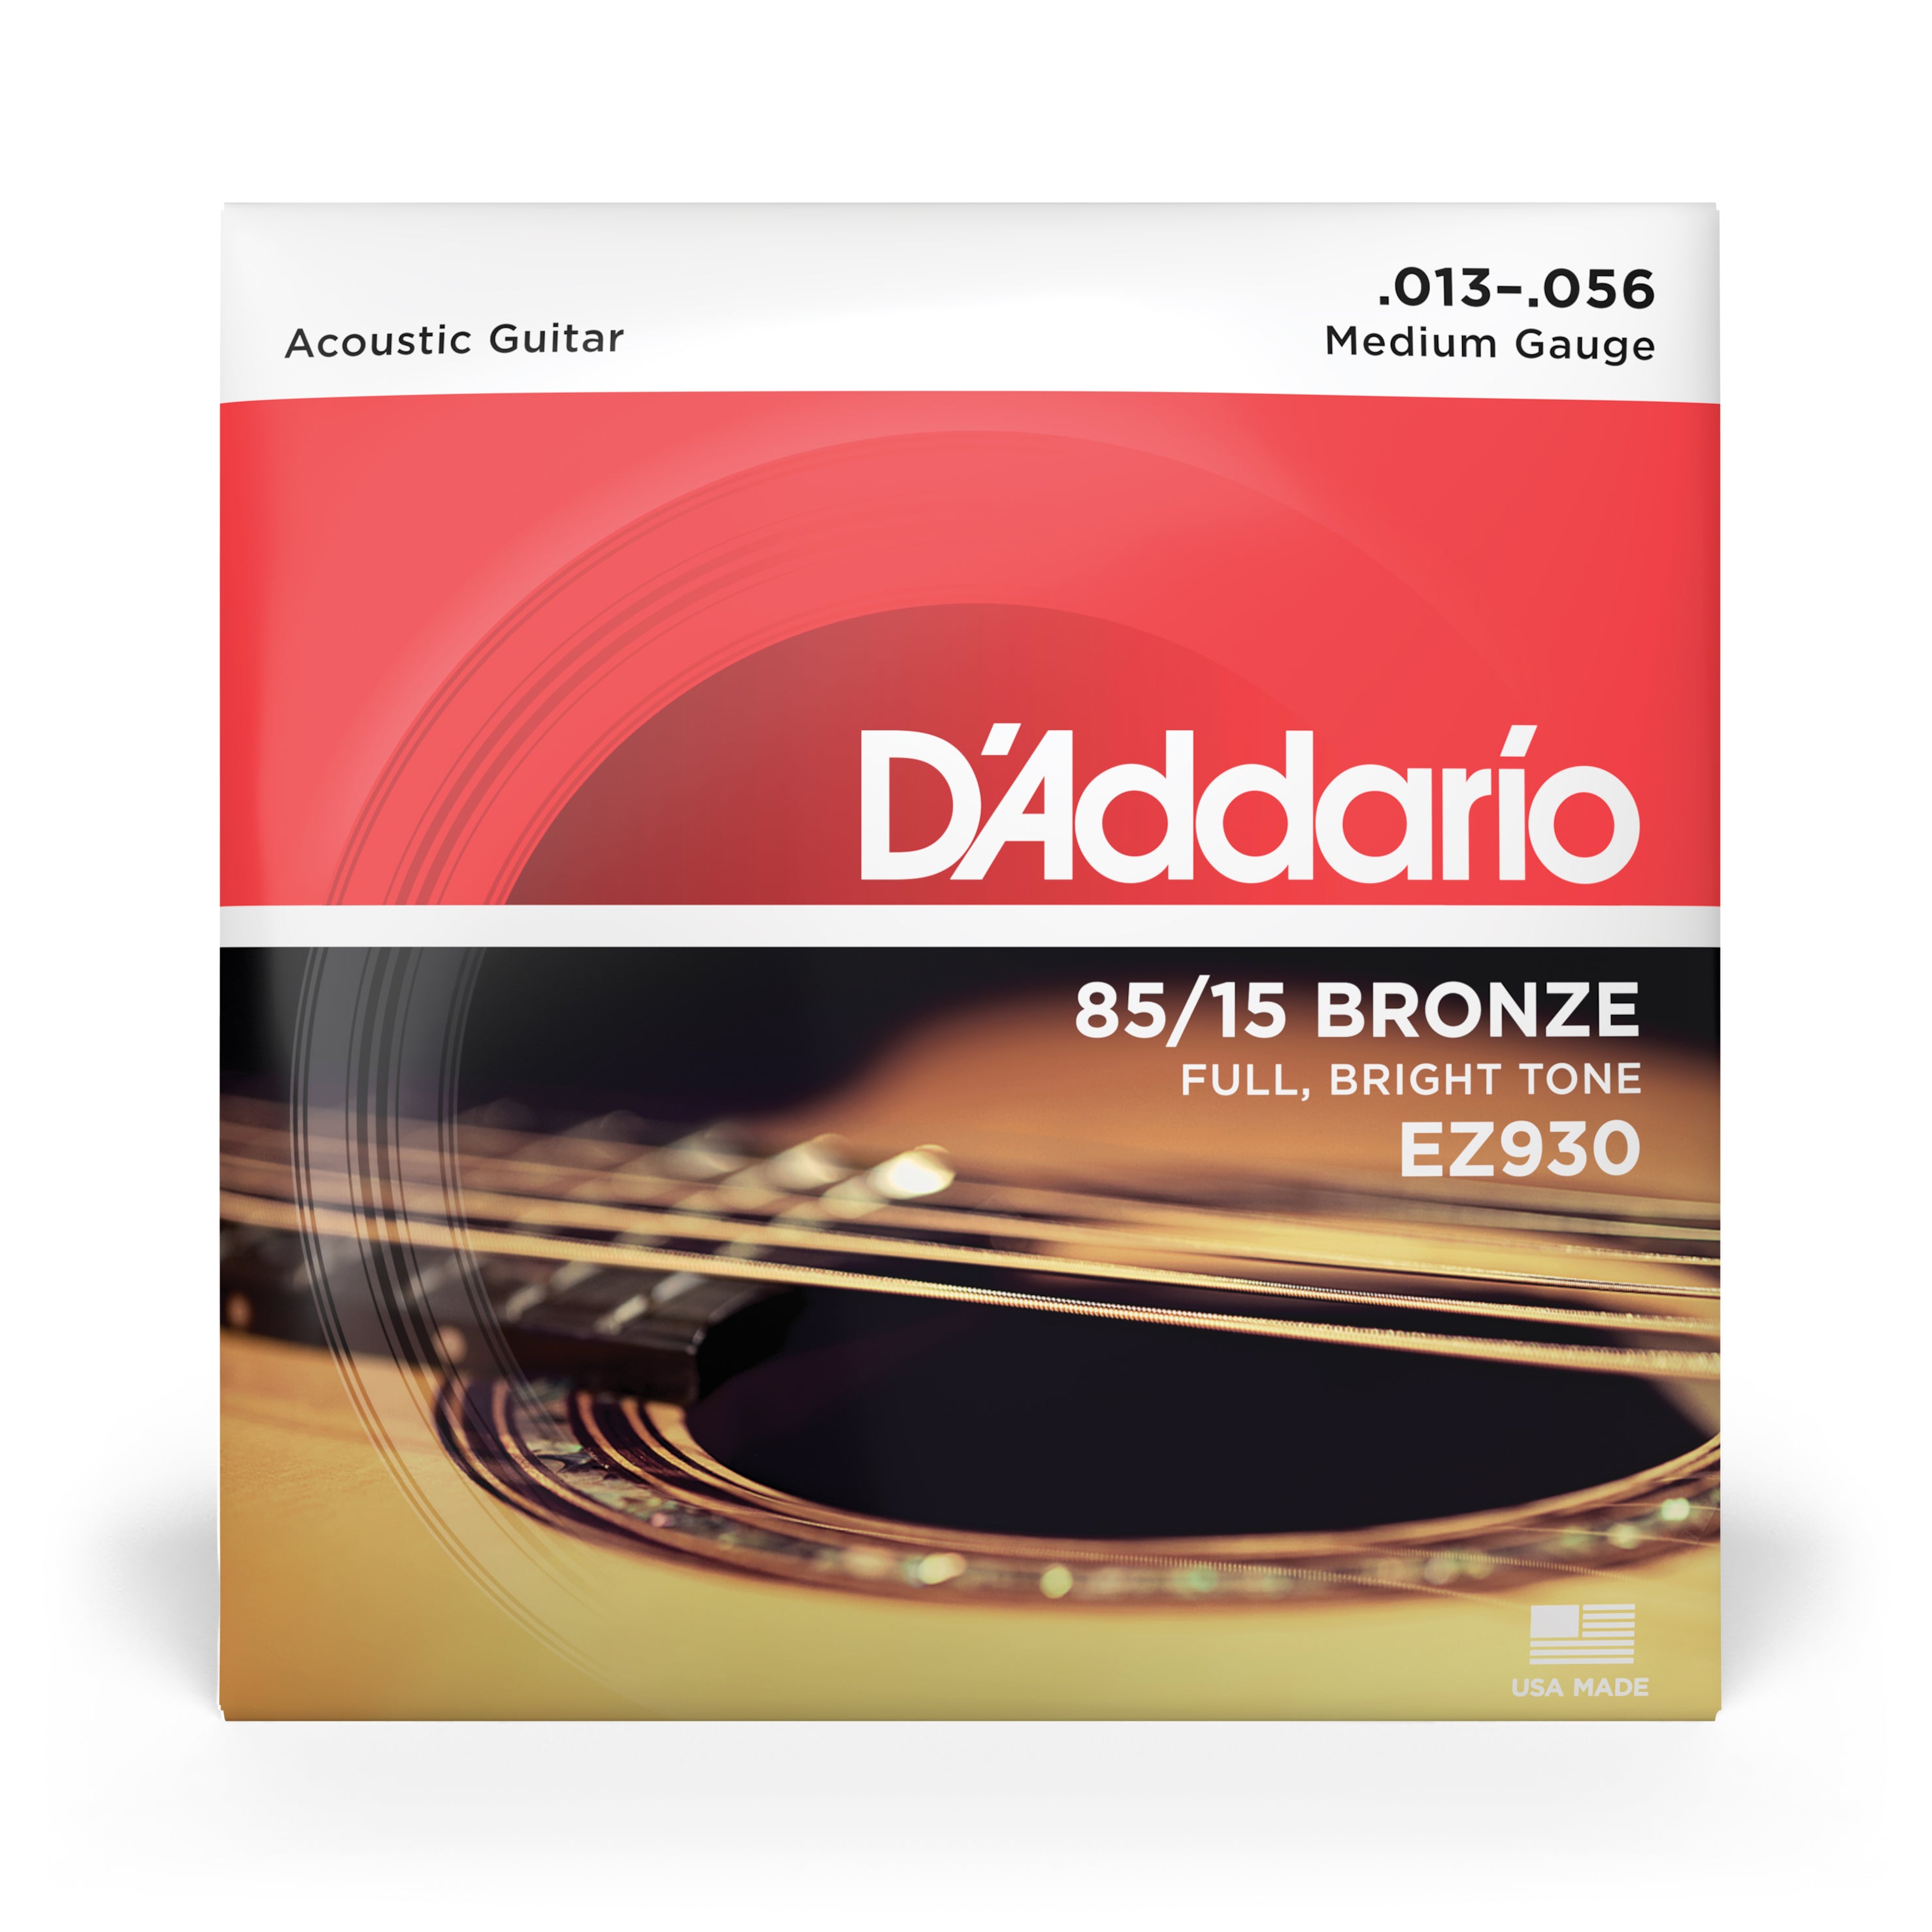 D'Addario EZ930 85/15 Bronze 13-56 Acoustic Guitar Strings, Medium